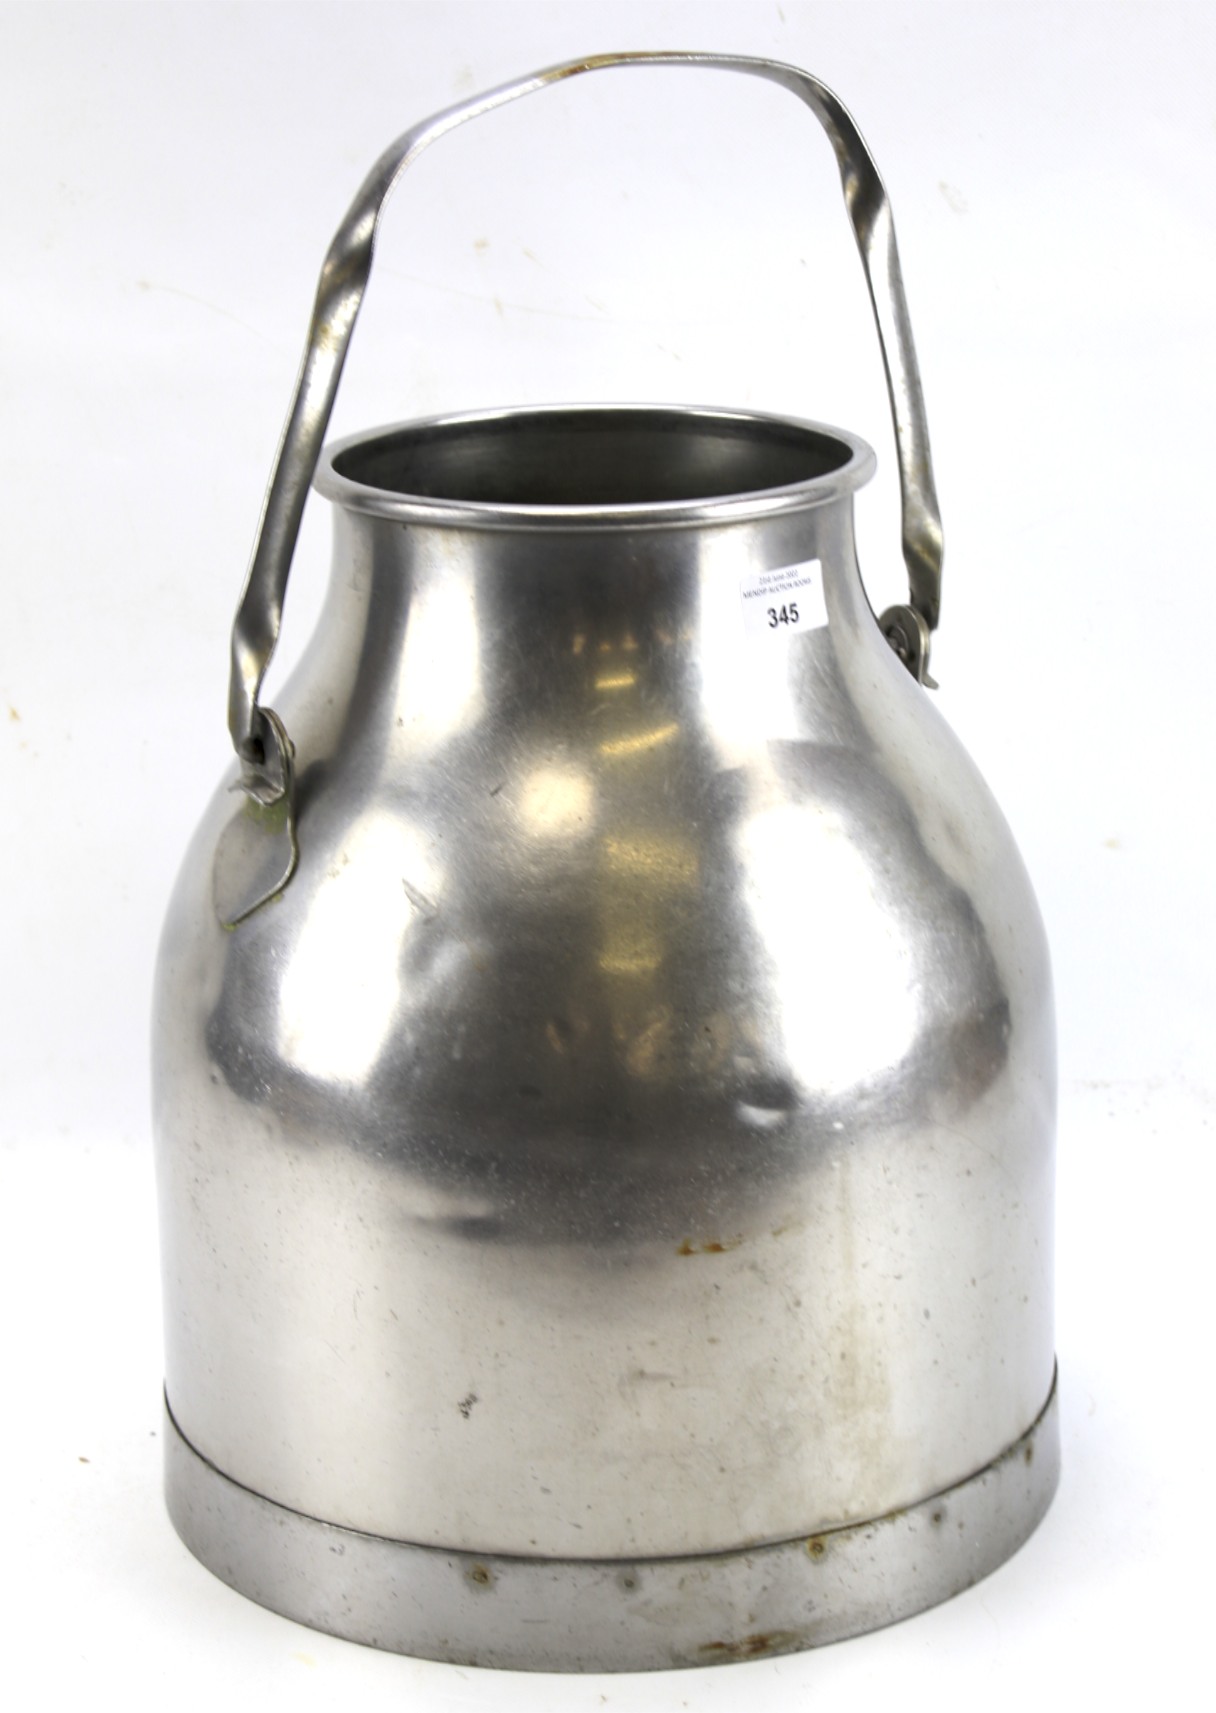 A vintage steel milk churn.